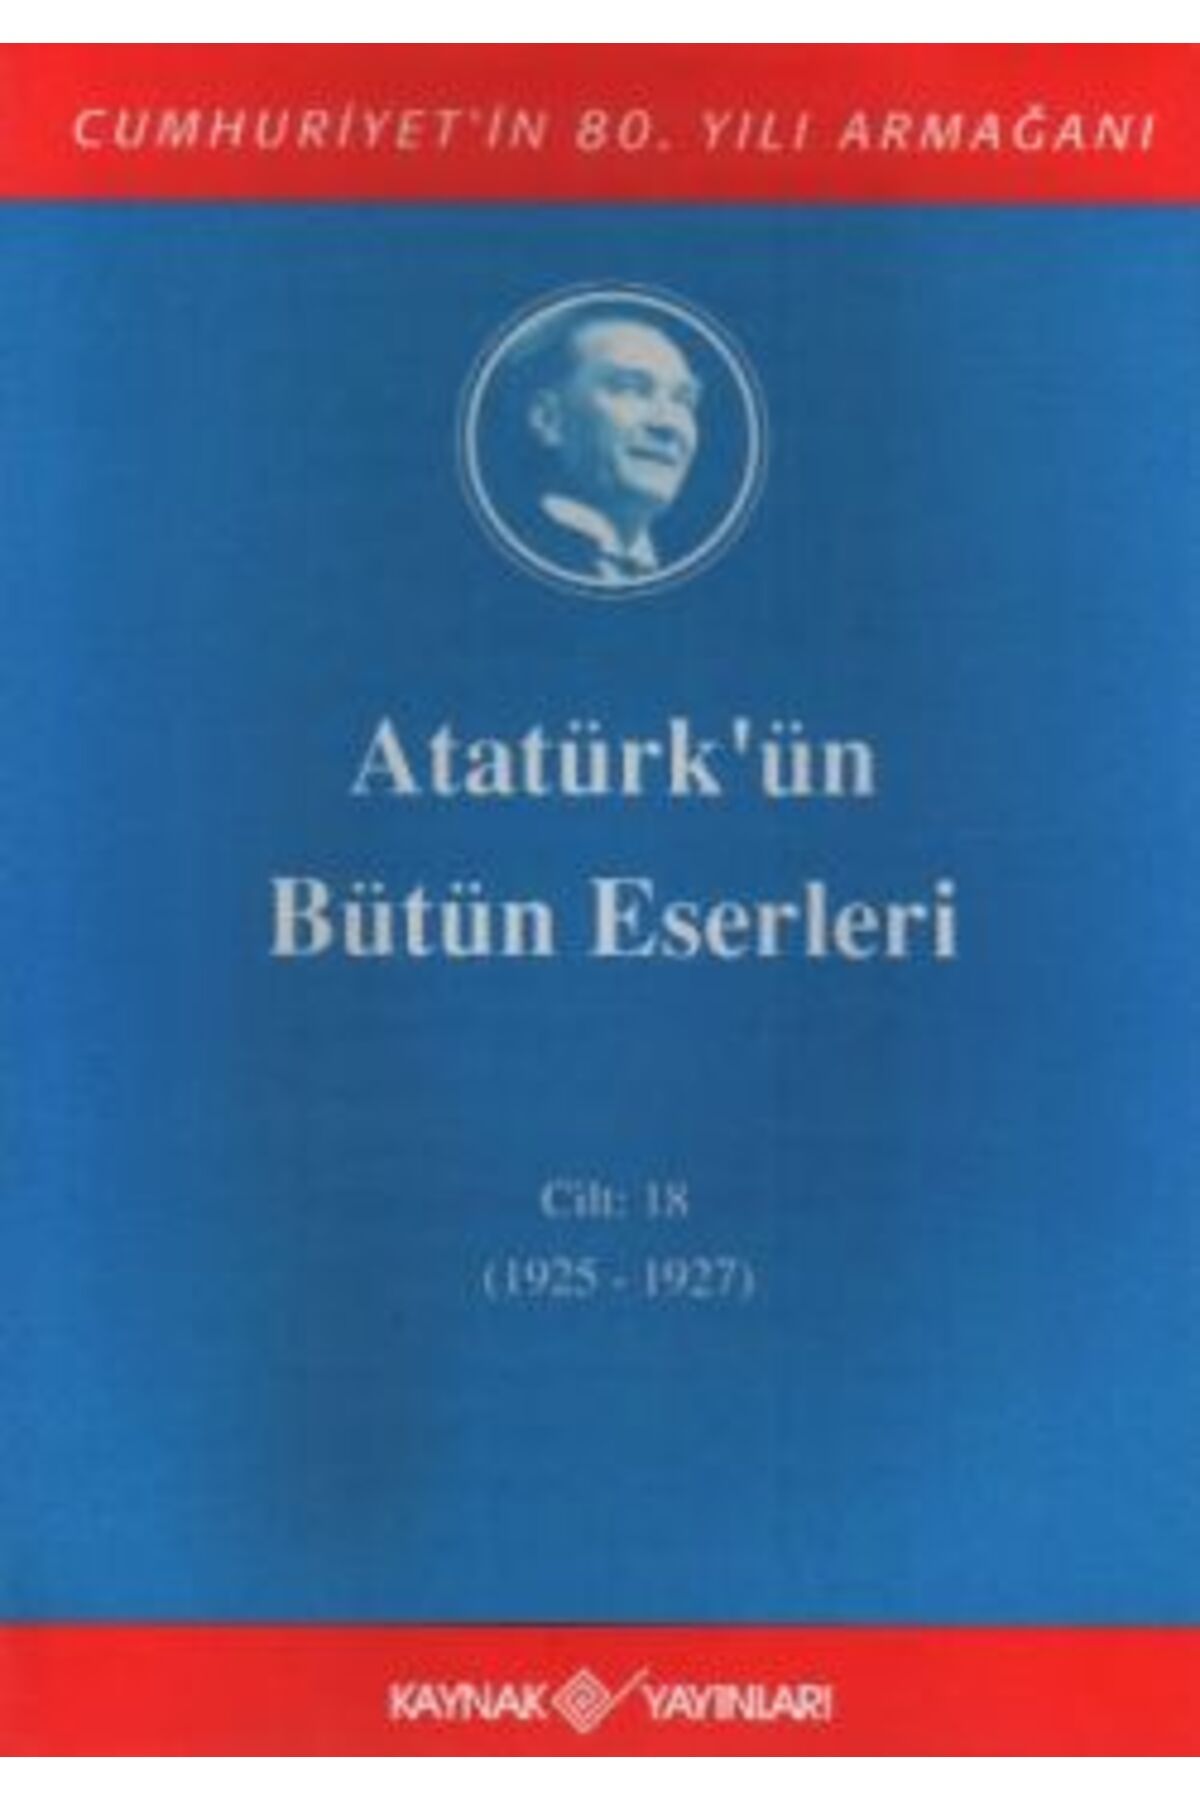 Kaynak Yayınları Atatürk’ün Bütün Eserleri Cilt: 18